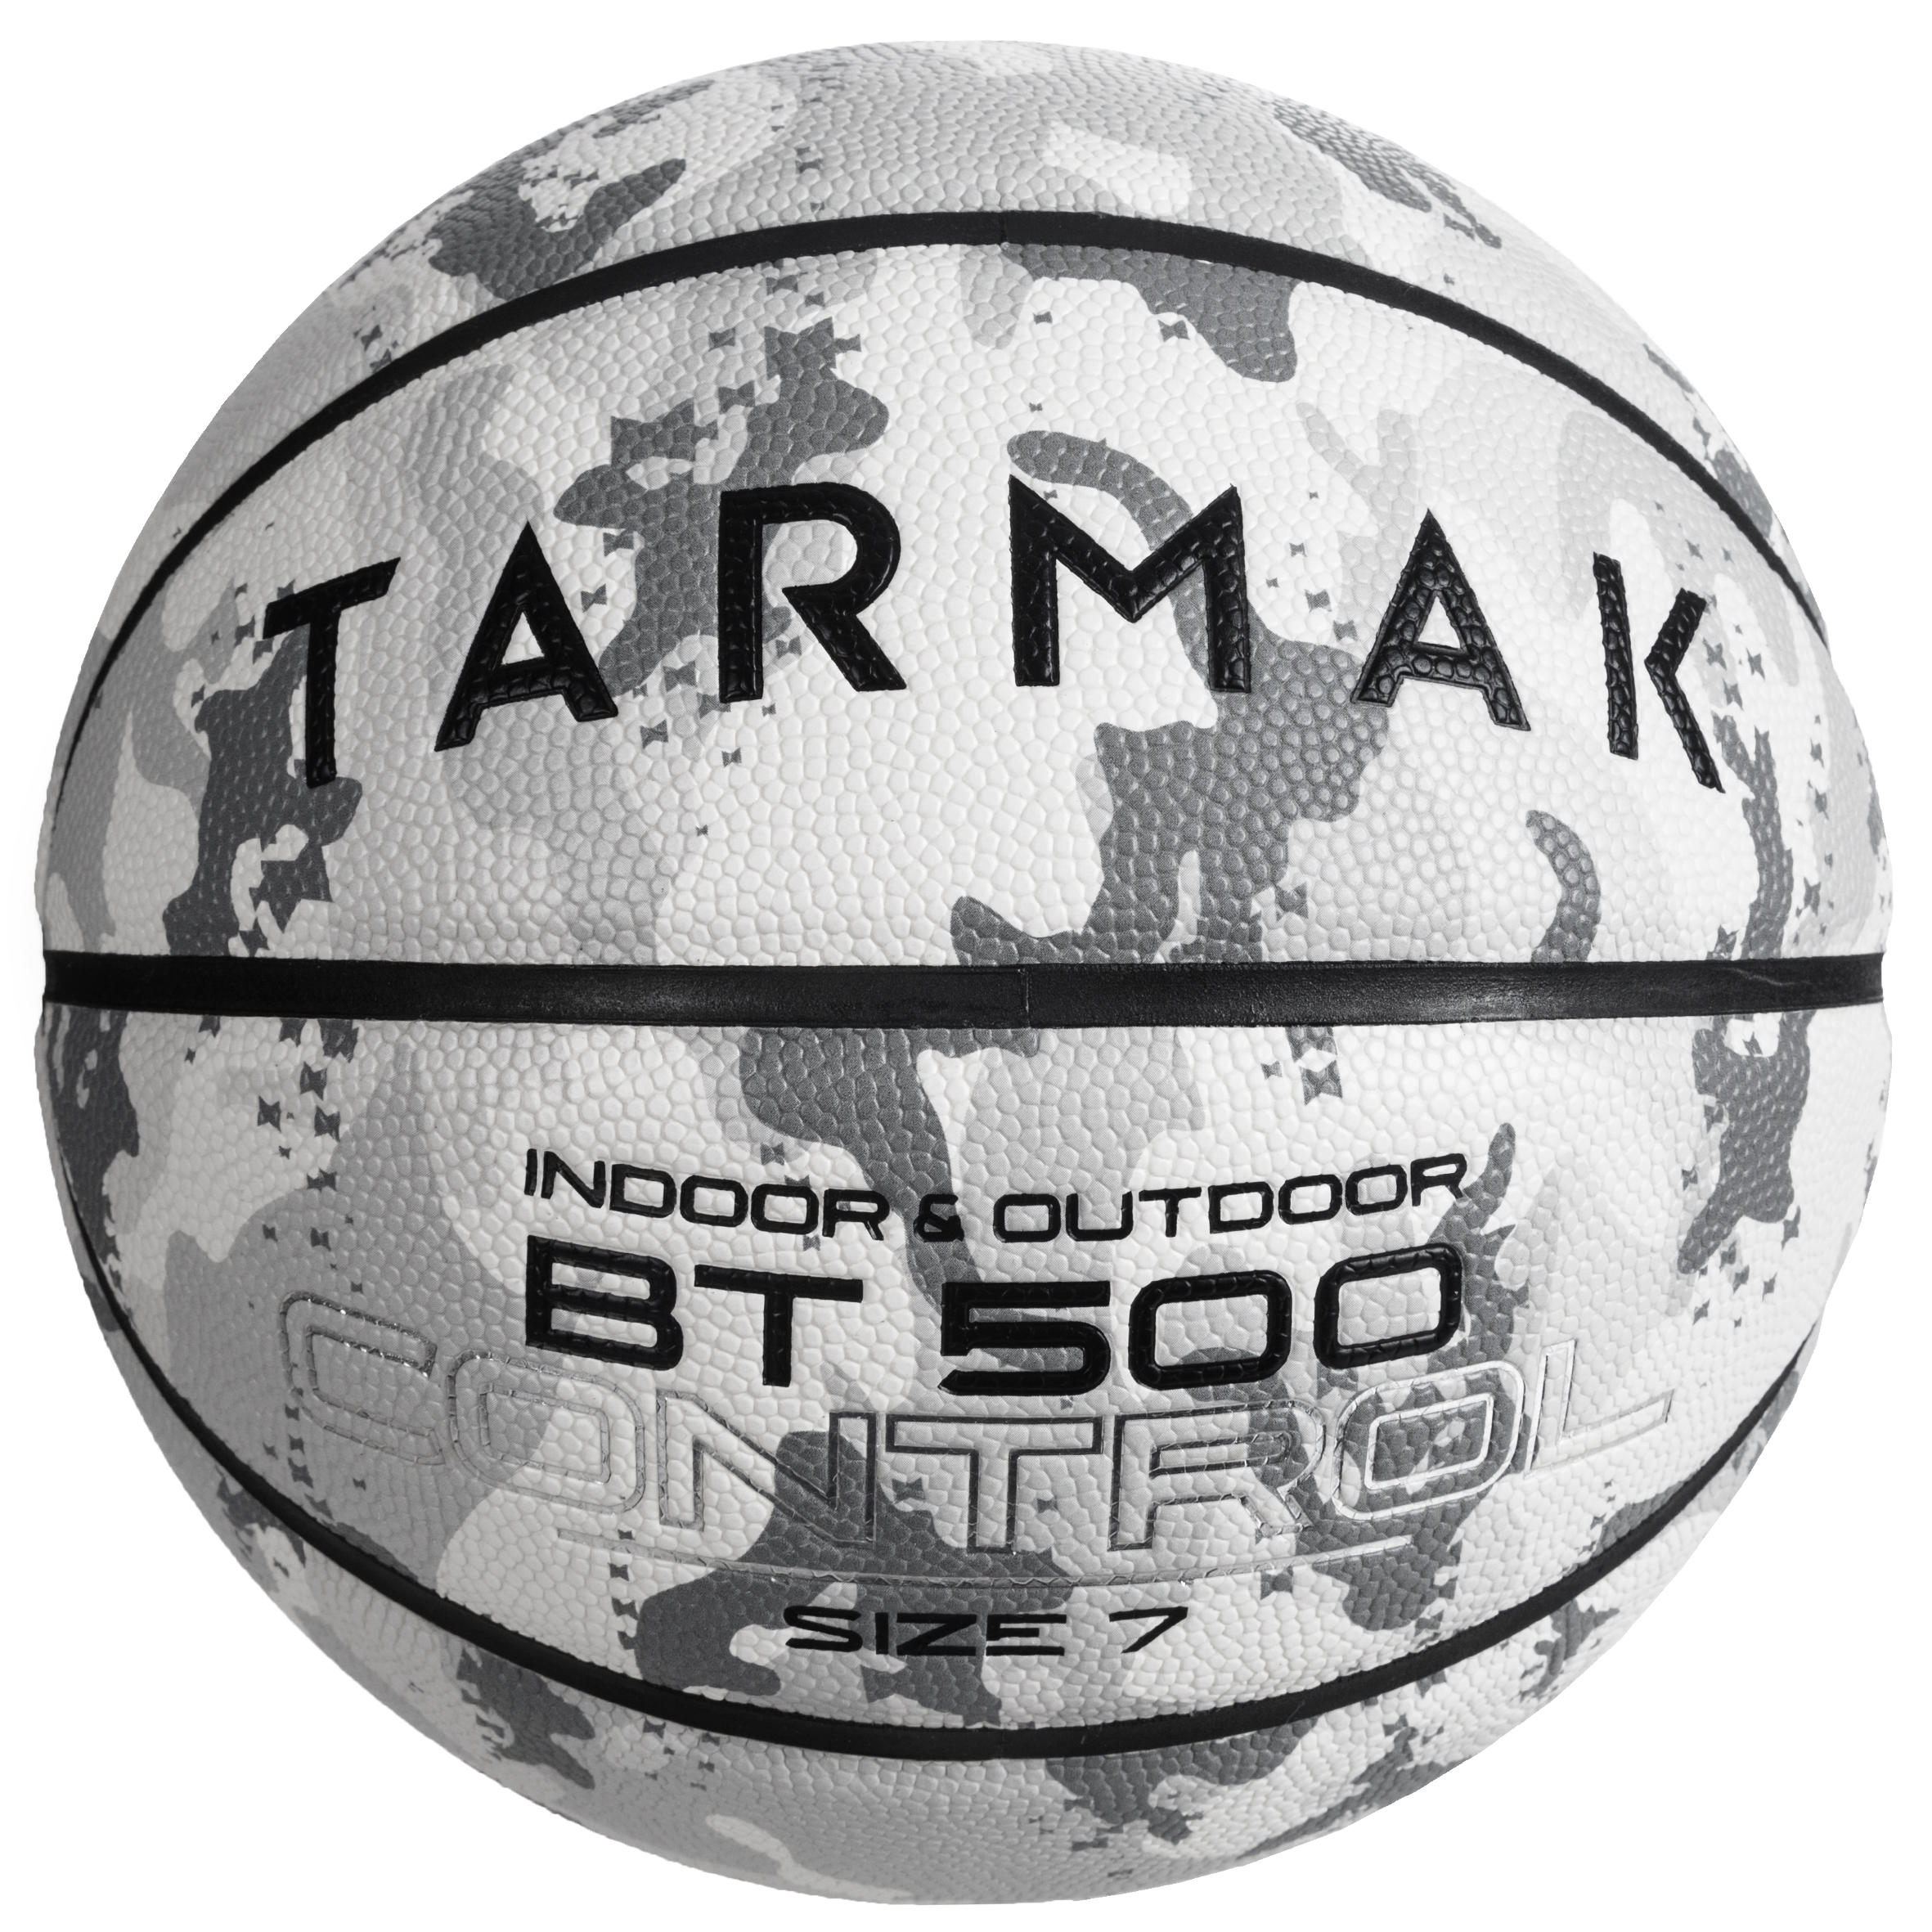 ลูกบาสเก็ตบอลรุ่น BT500 เบอร์ 7 (สี Camo/ขาว) basketball บาสเก็ตบอล Free Shipping